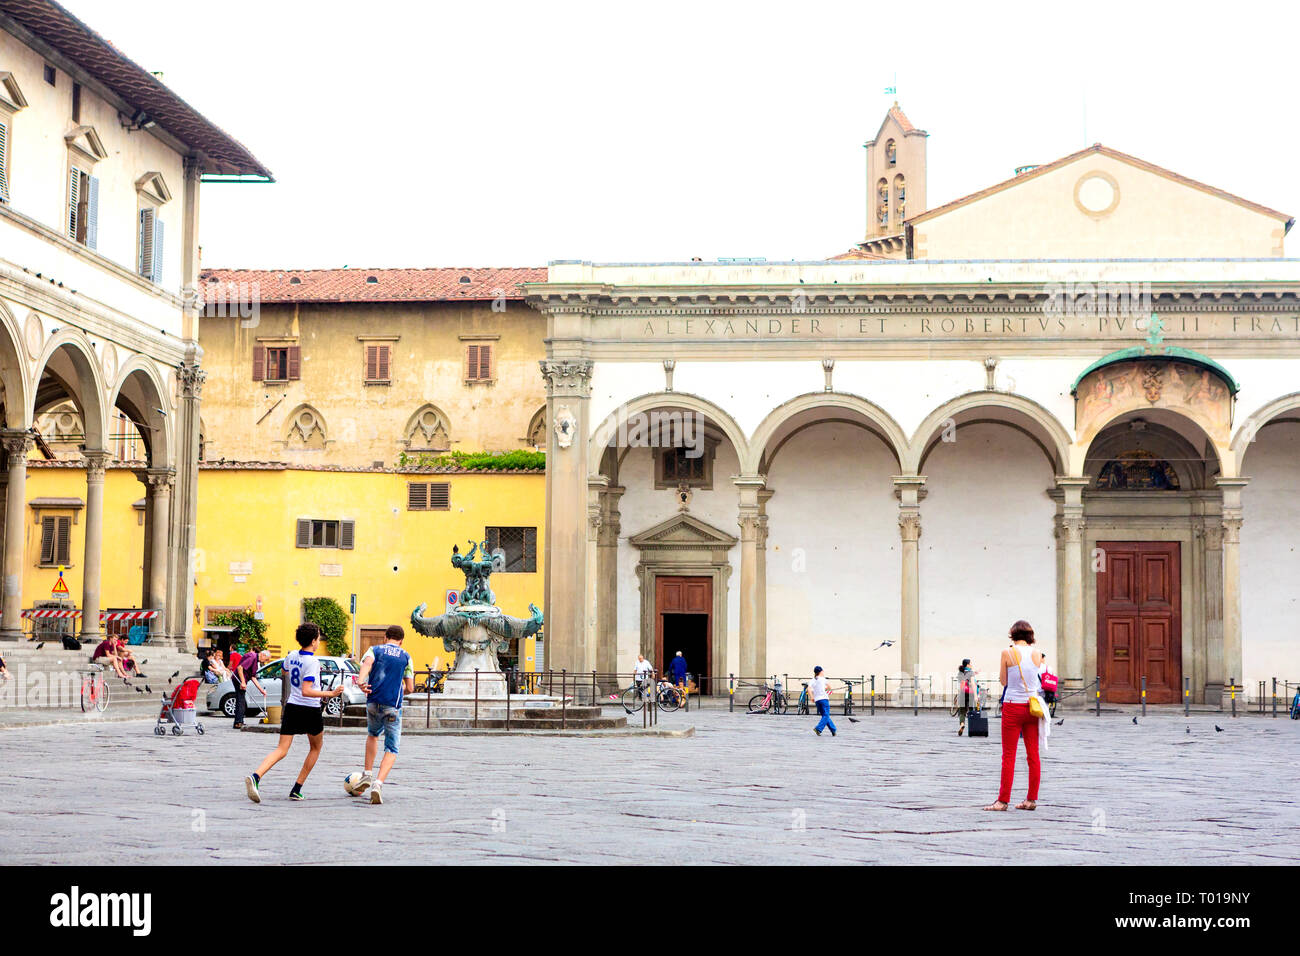 Los muchachos adolescentes, patear una socerball alrededor de la Piazza della Santissima Annunziata, en Florencia, en la región de Toscana, Italia. Foto de stock